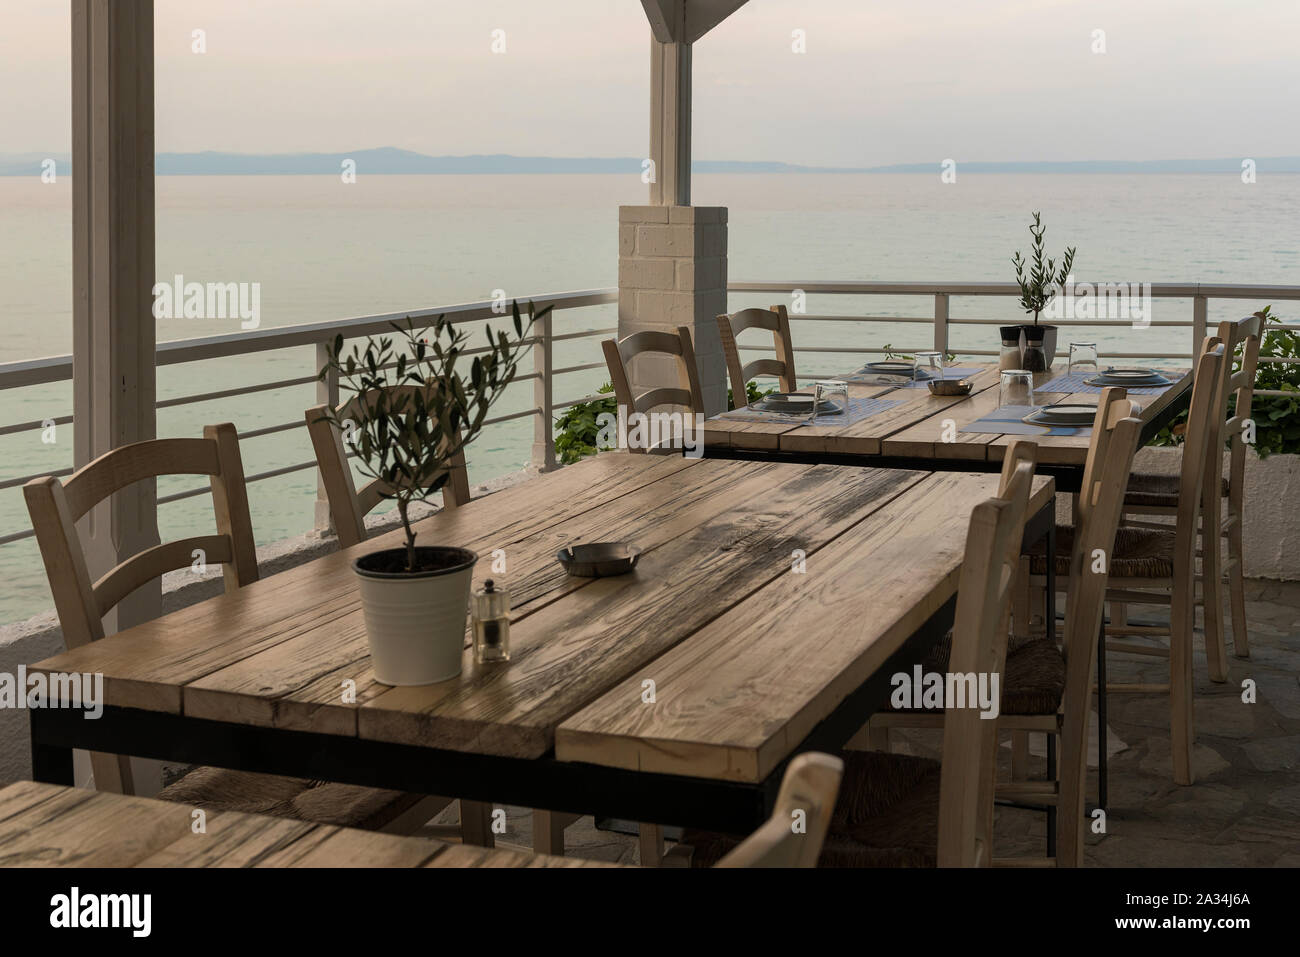 Ristorante mediterraneo tavolo in legno con albero di olivo, ristoranti setup, il sale e il pepe e vista mare Foto Stock